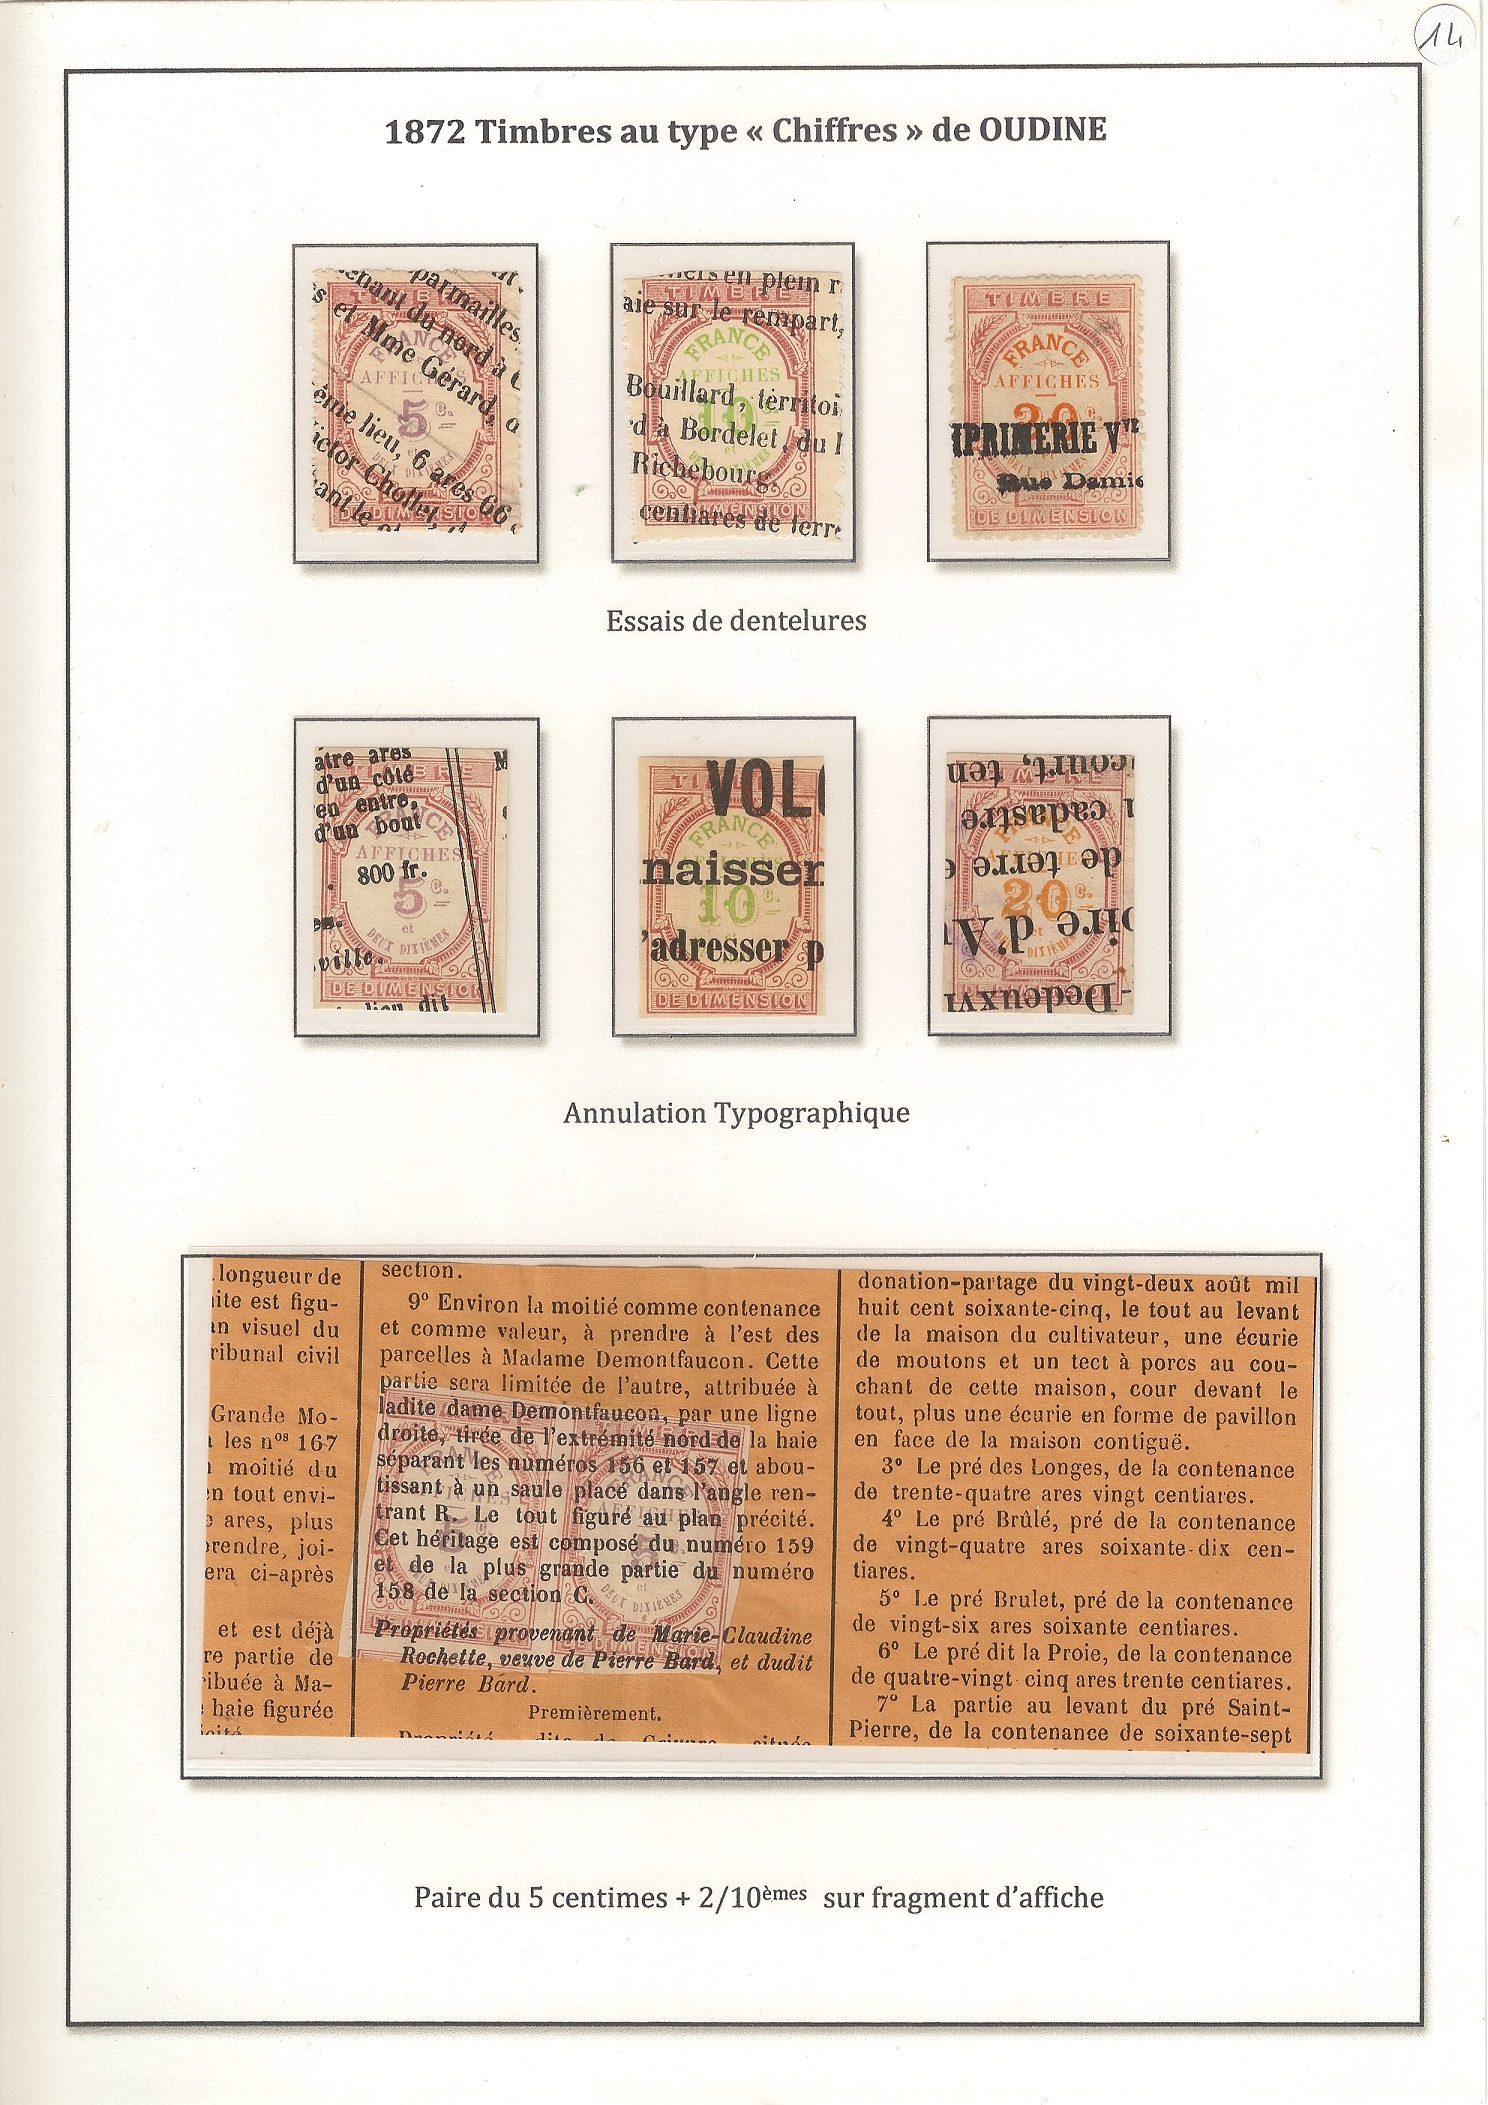 Les timbres nationaux, mobiles pour affiches p. 14